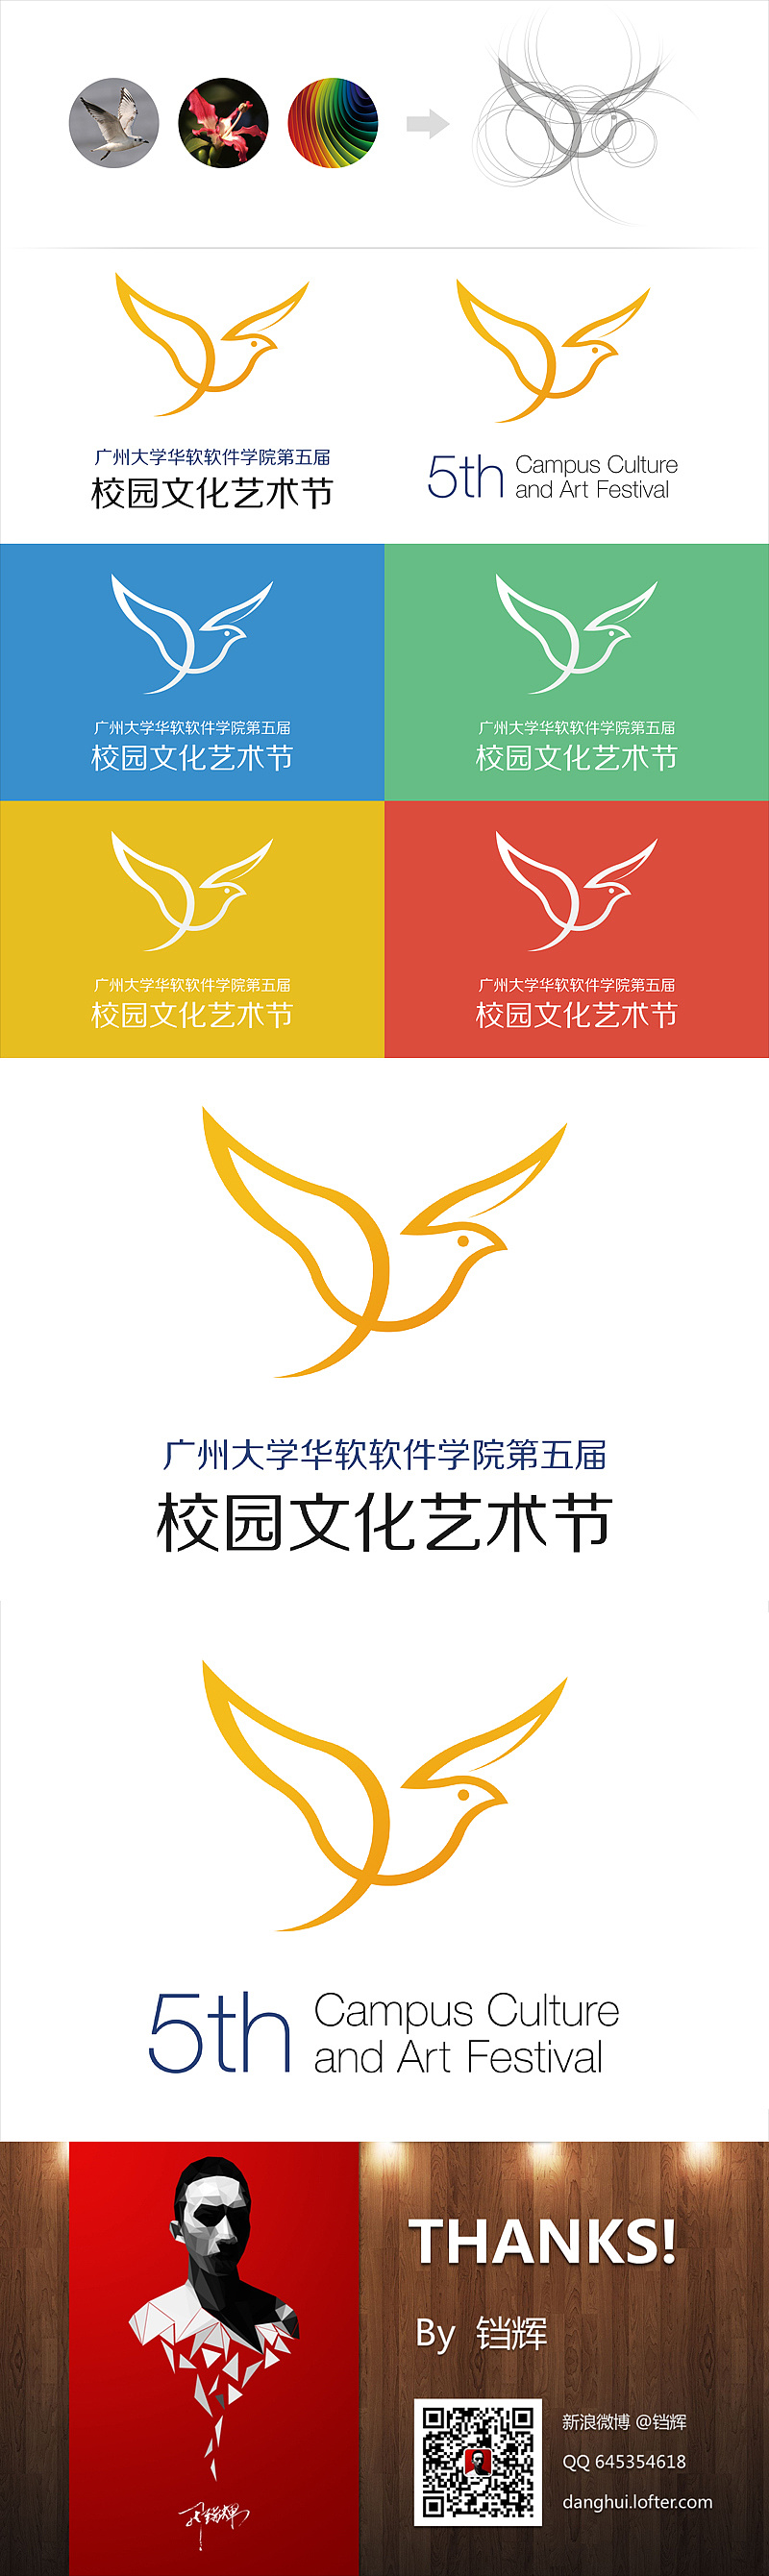 校园文化节 logo设计